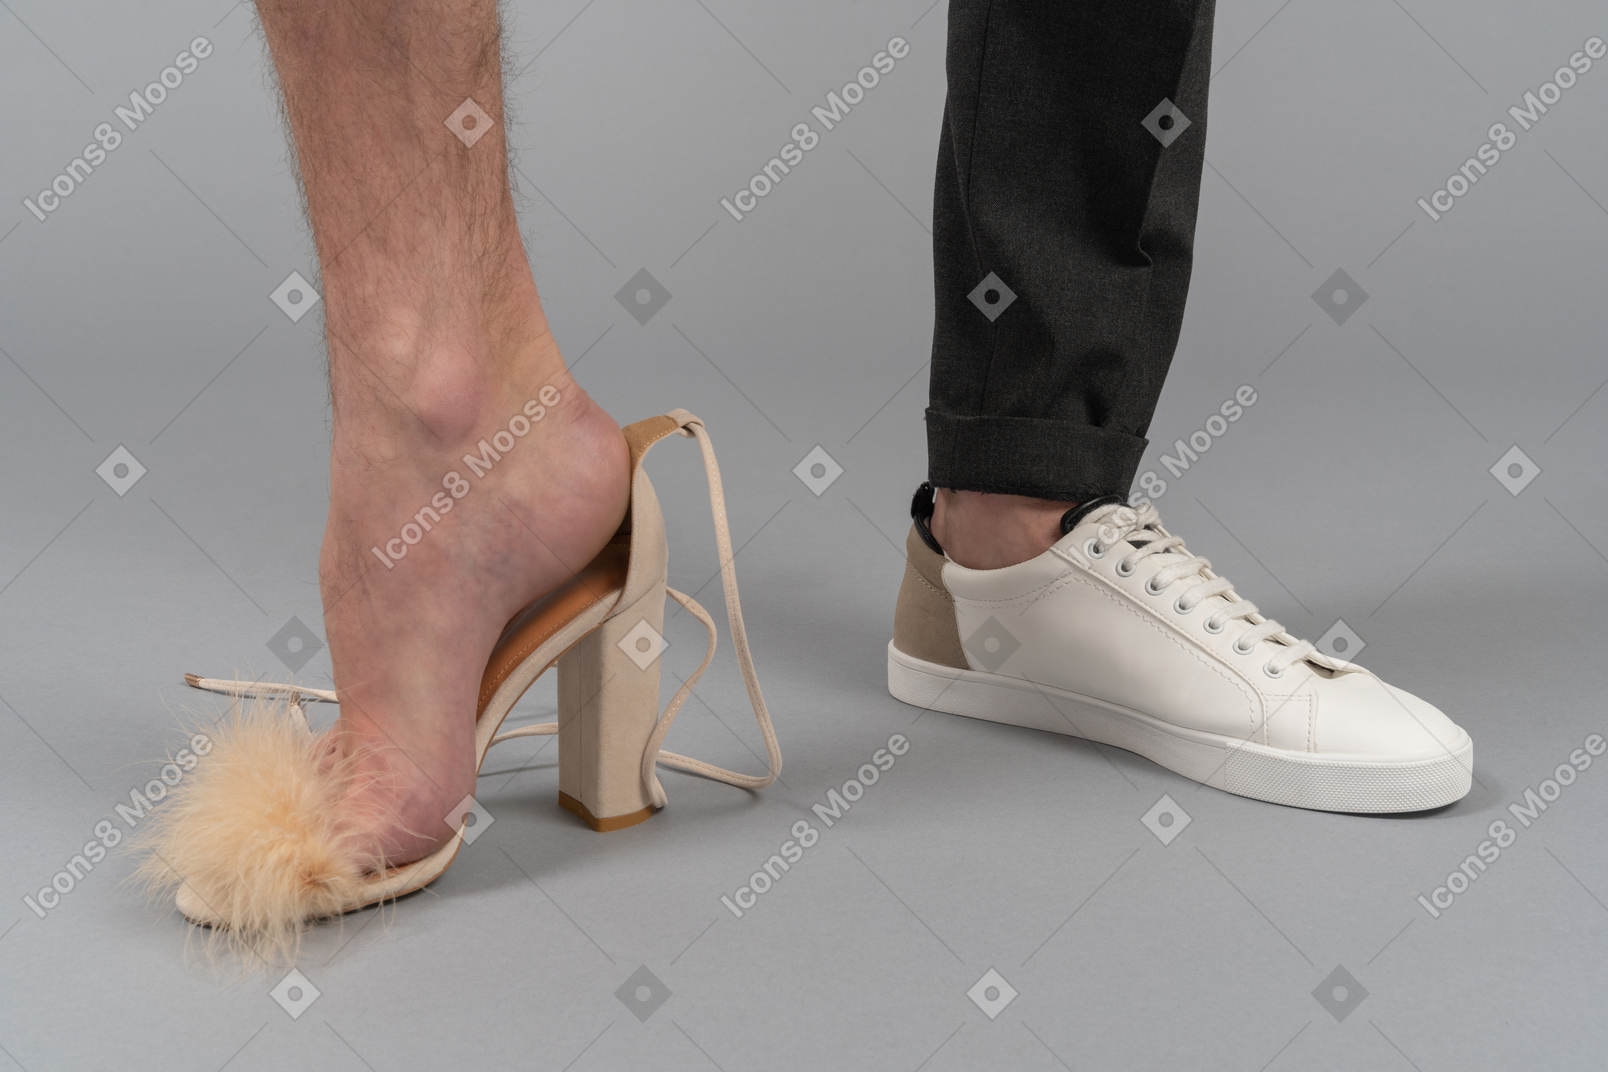 Мужчина в туфлях и кроссовках одновременно